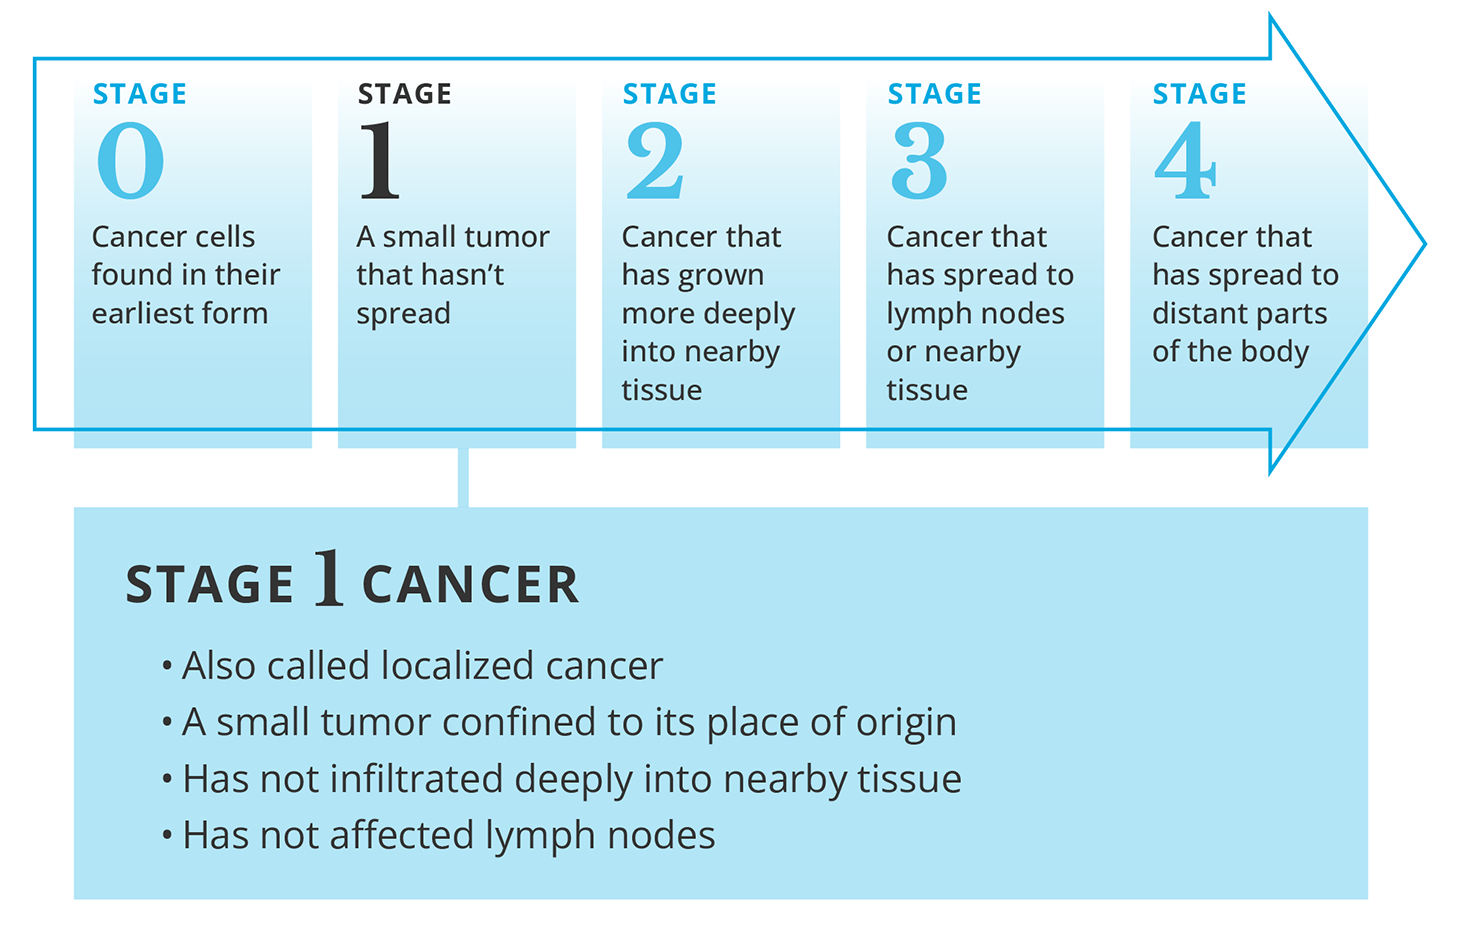 Description of stage 1 cancer